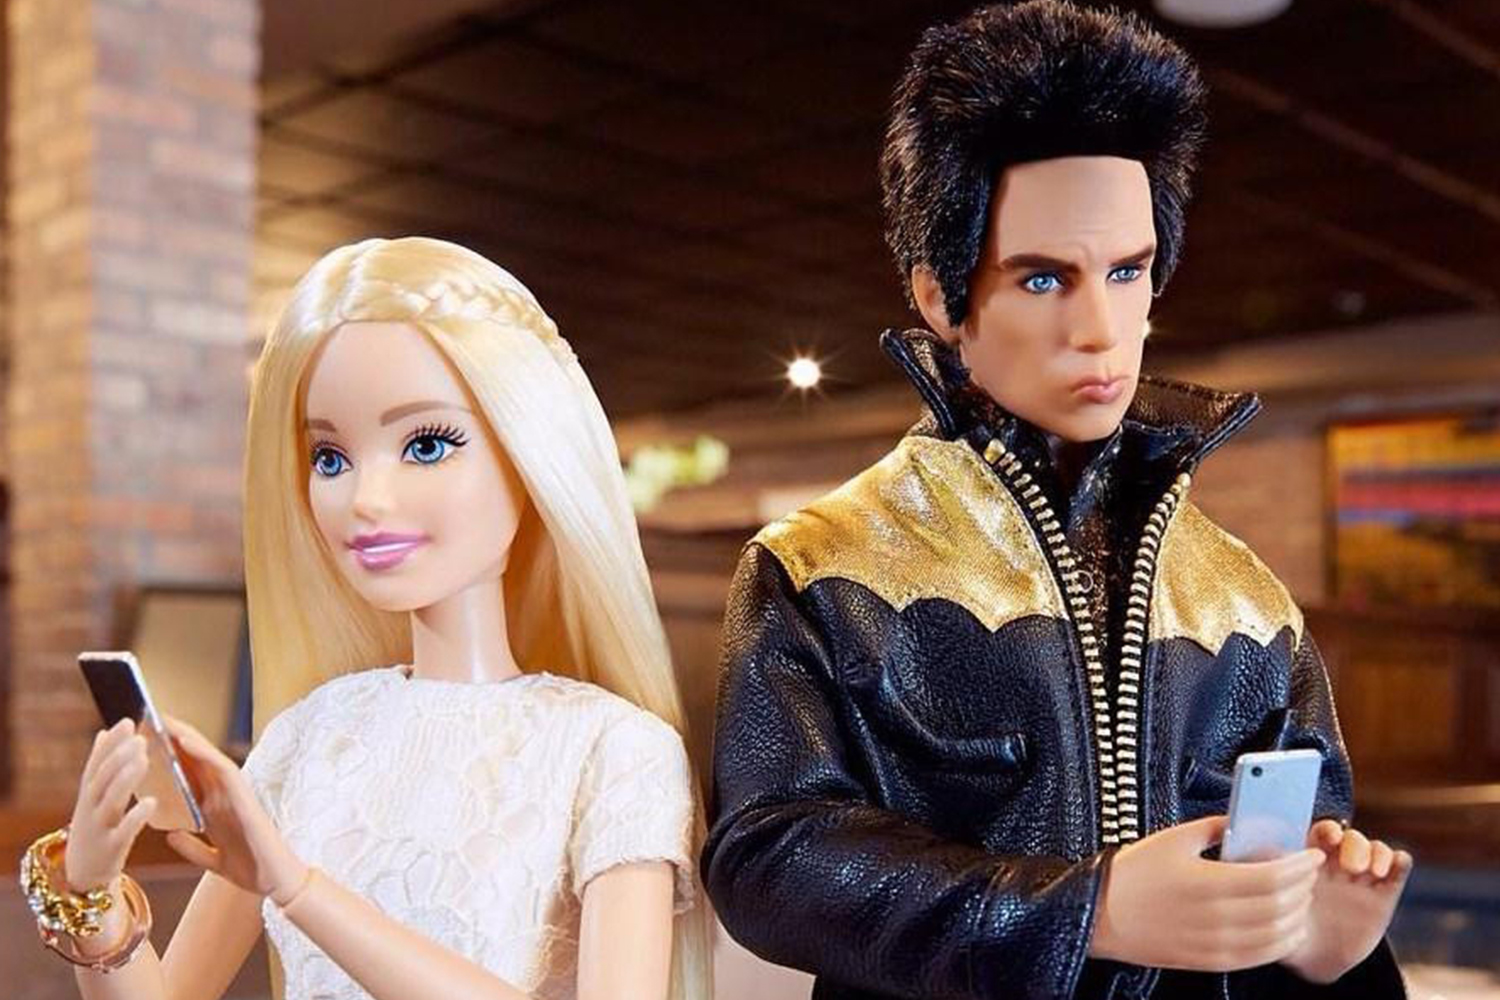 Los protagonistas de 'Zoolander' ya tienen su modelo de Barbie